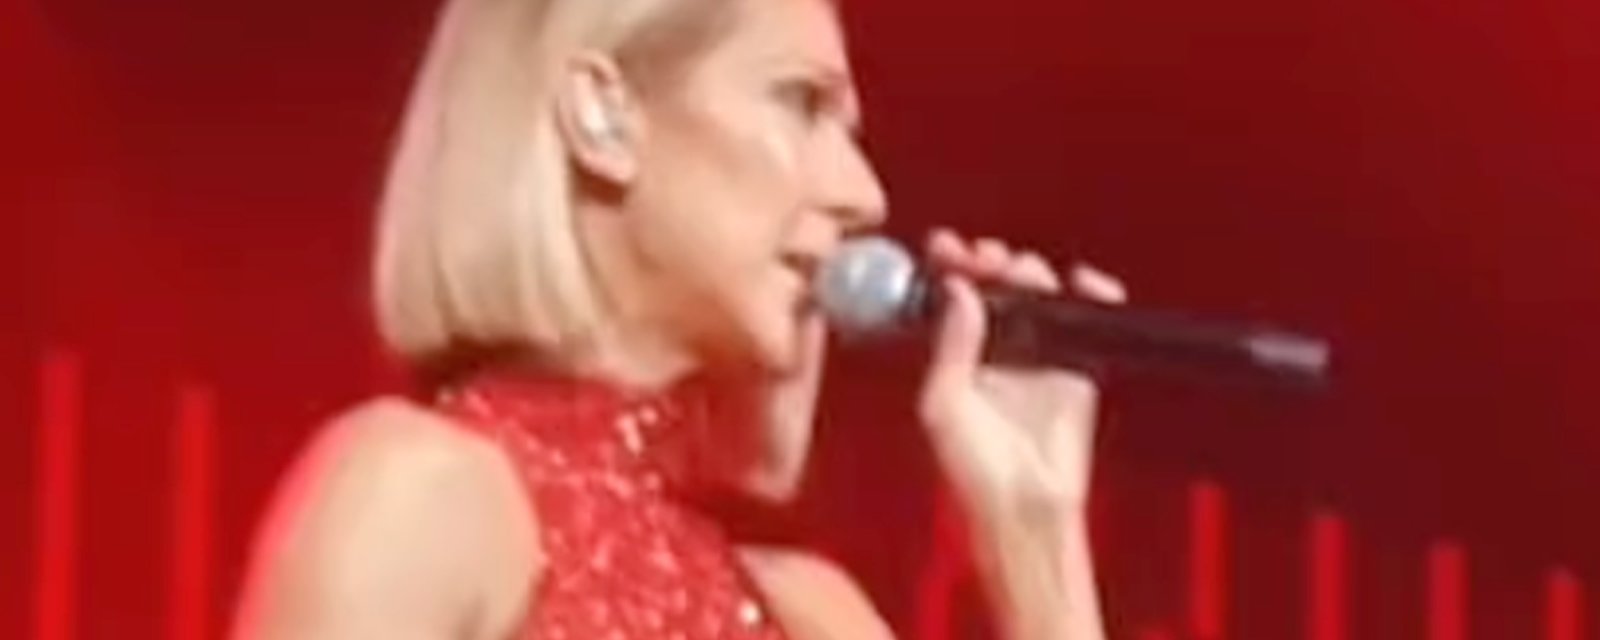 Une vidéo troublante de Céline Dion qui a des difficulté sur scène refait surface